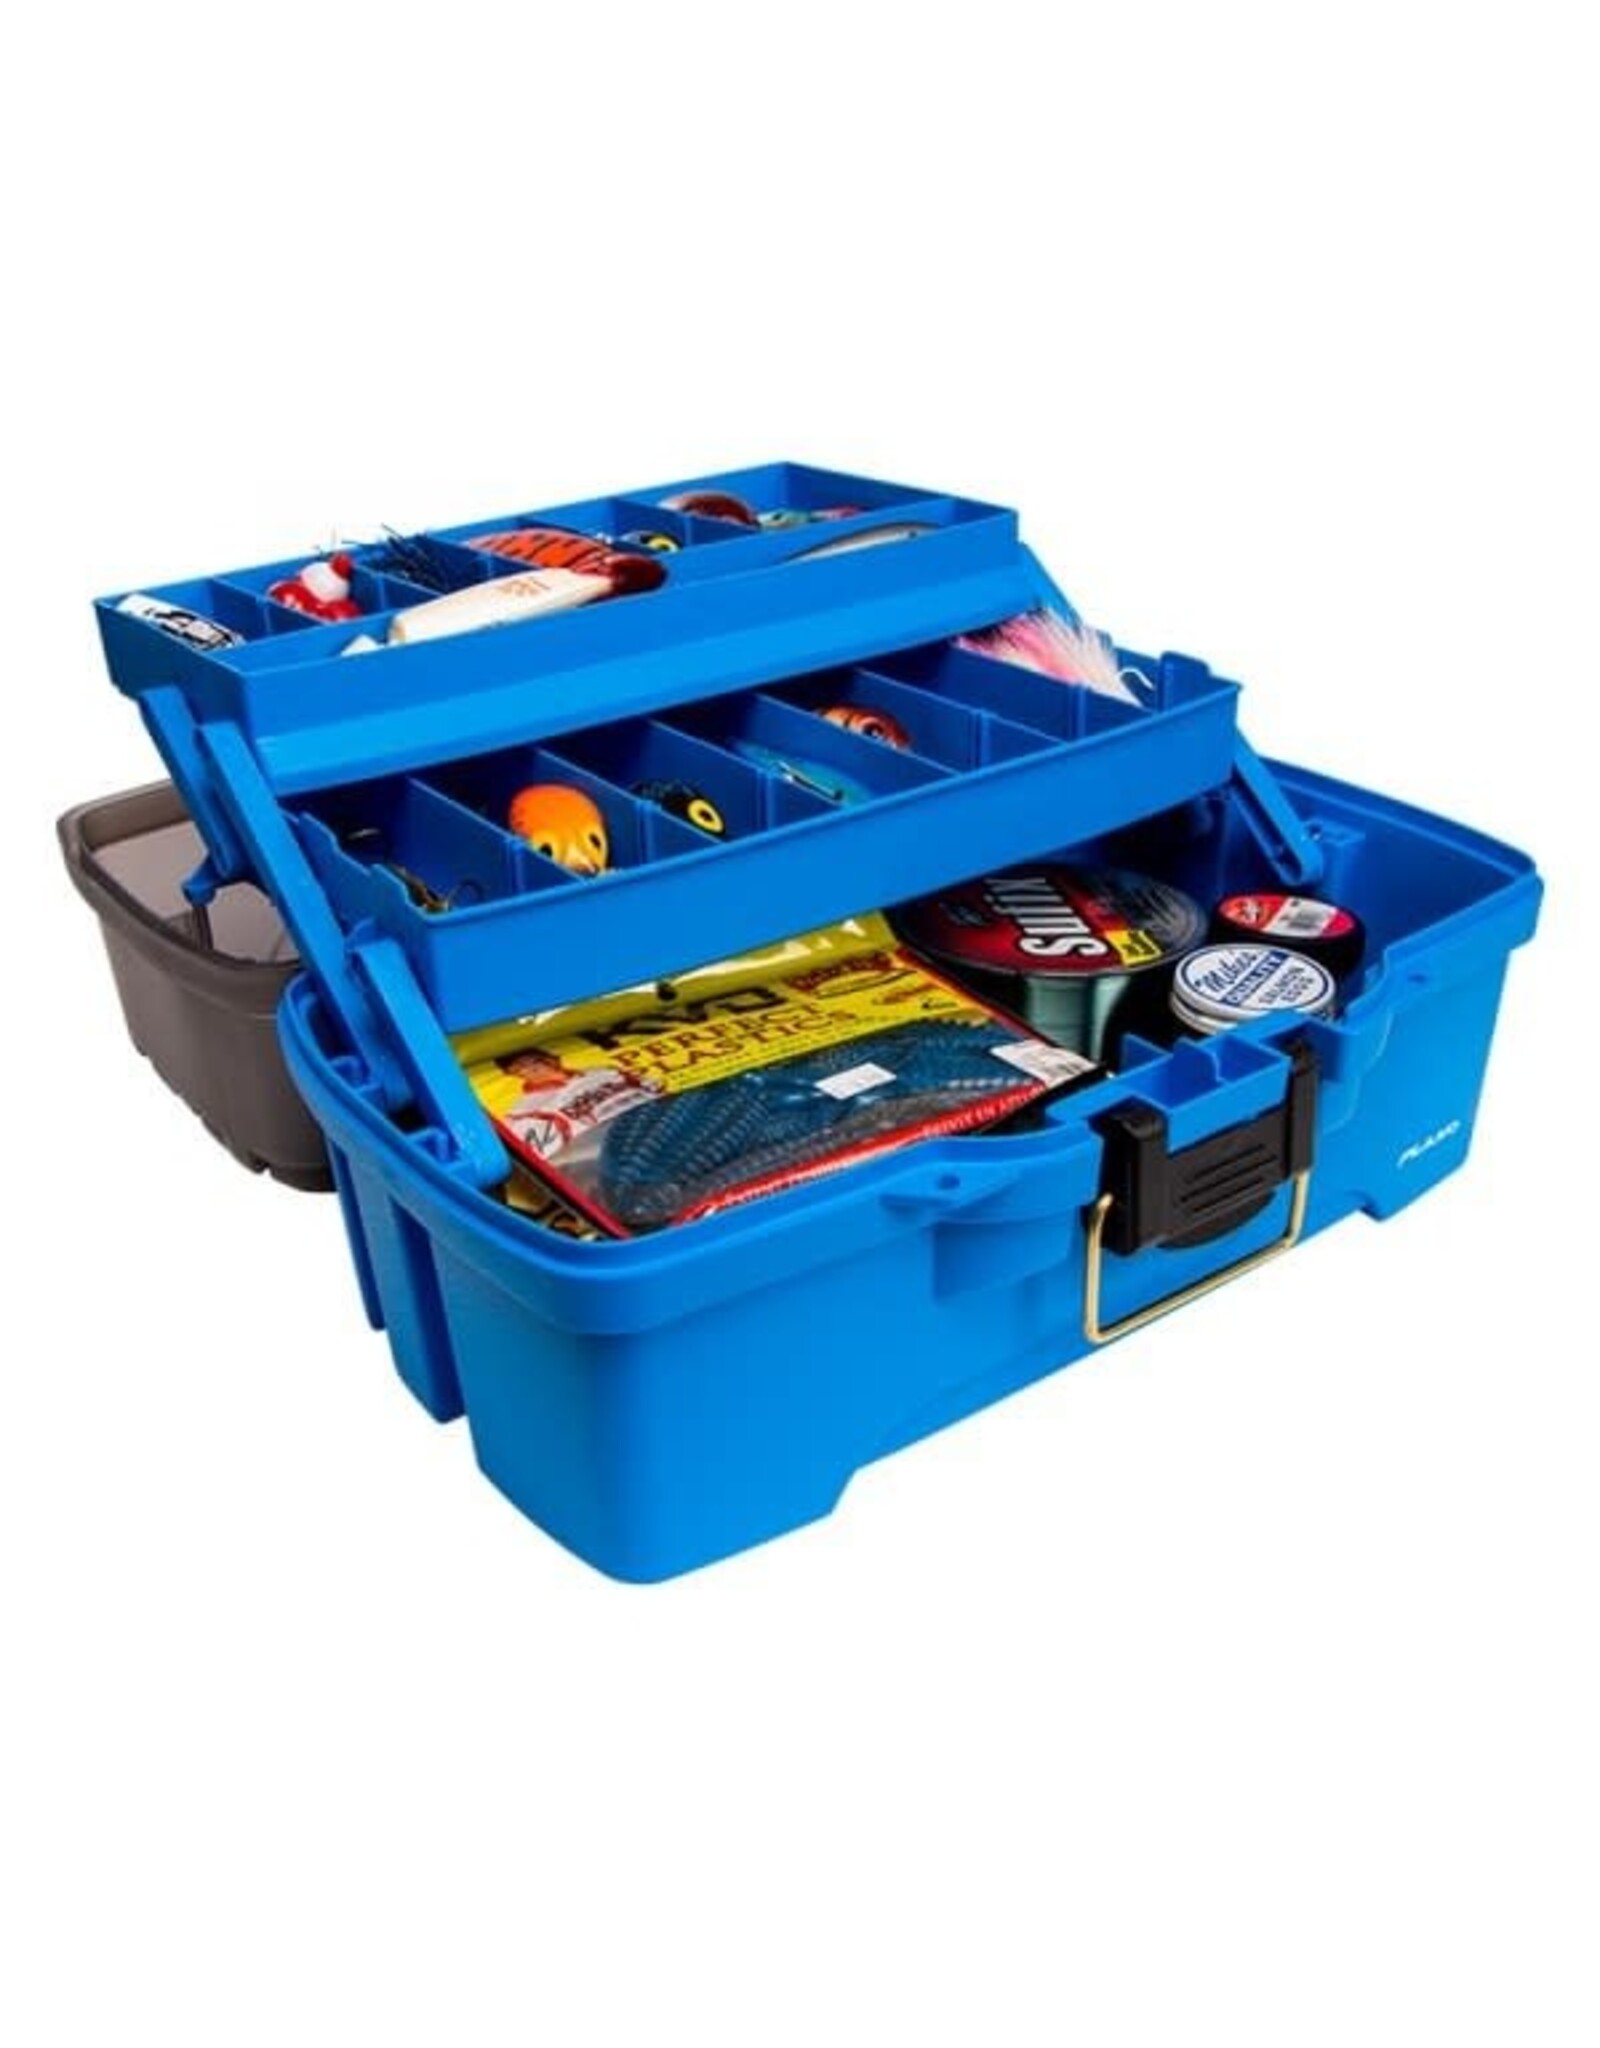 Plano 3 -Tray Box - Bright Blue